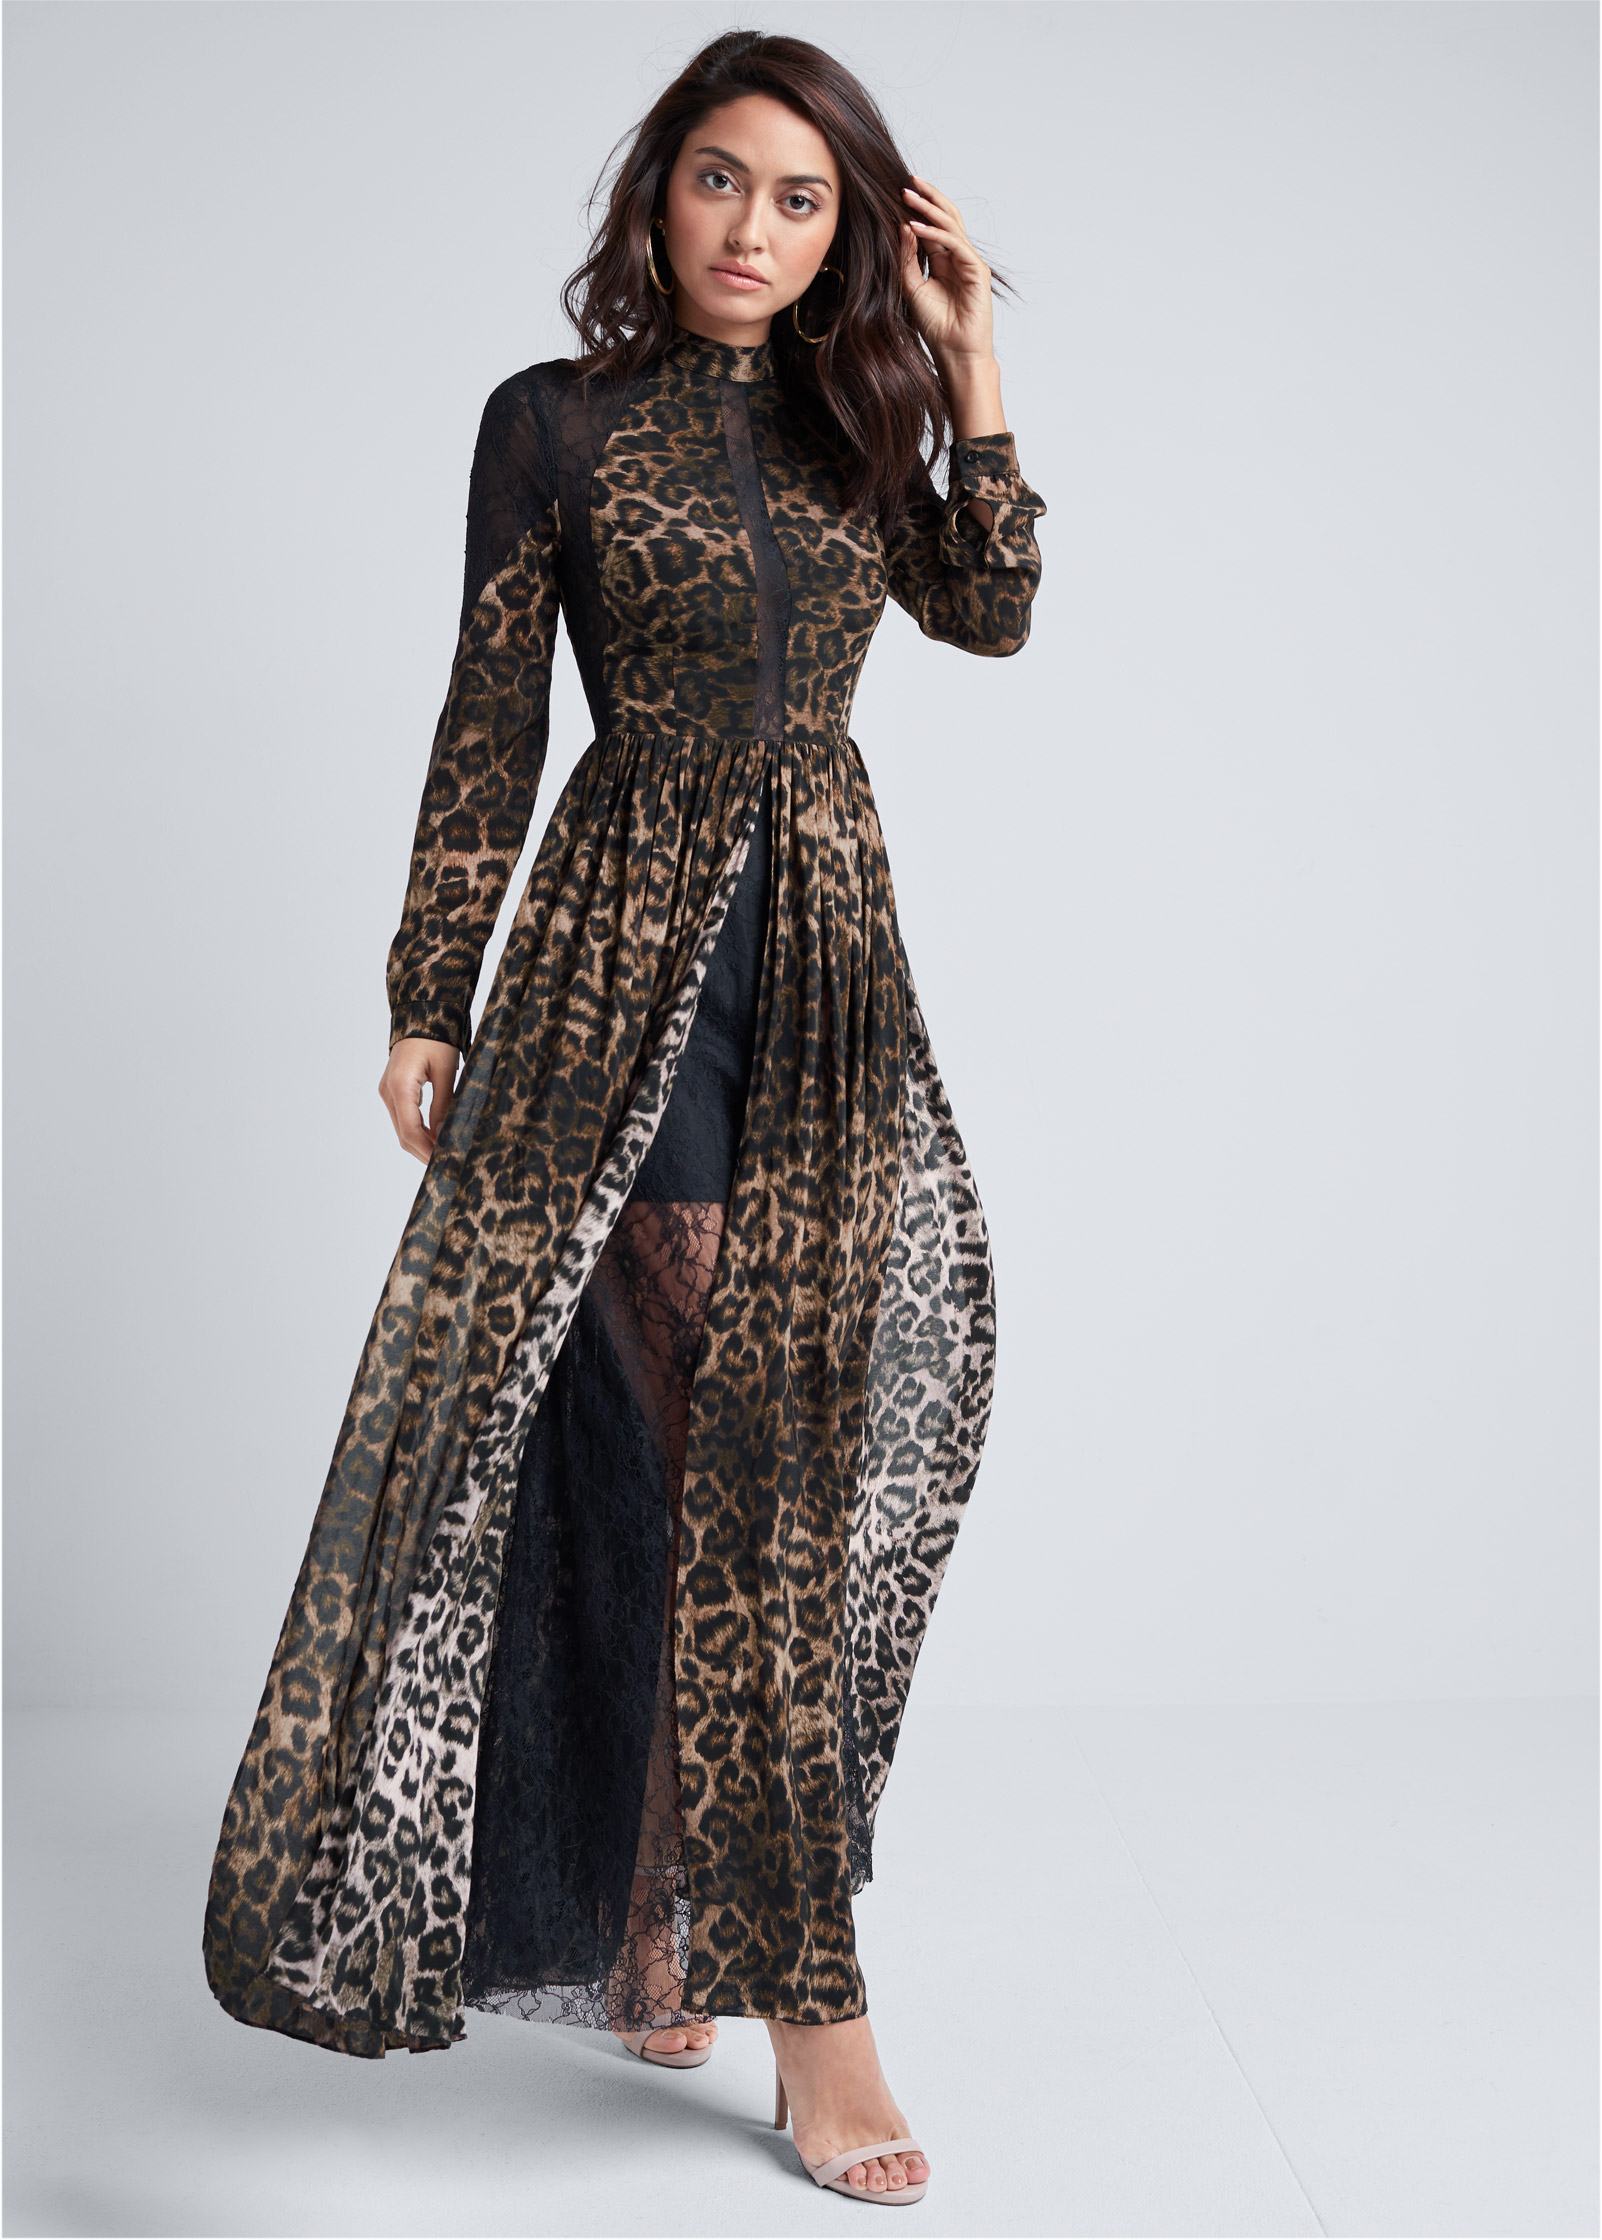 2 in 1 leopard print plunge dress